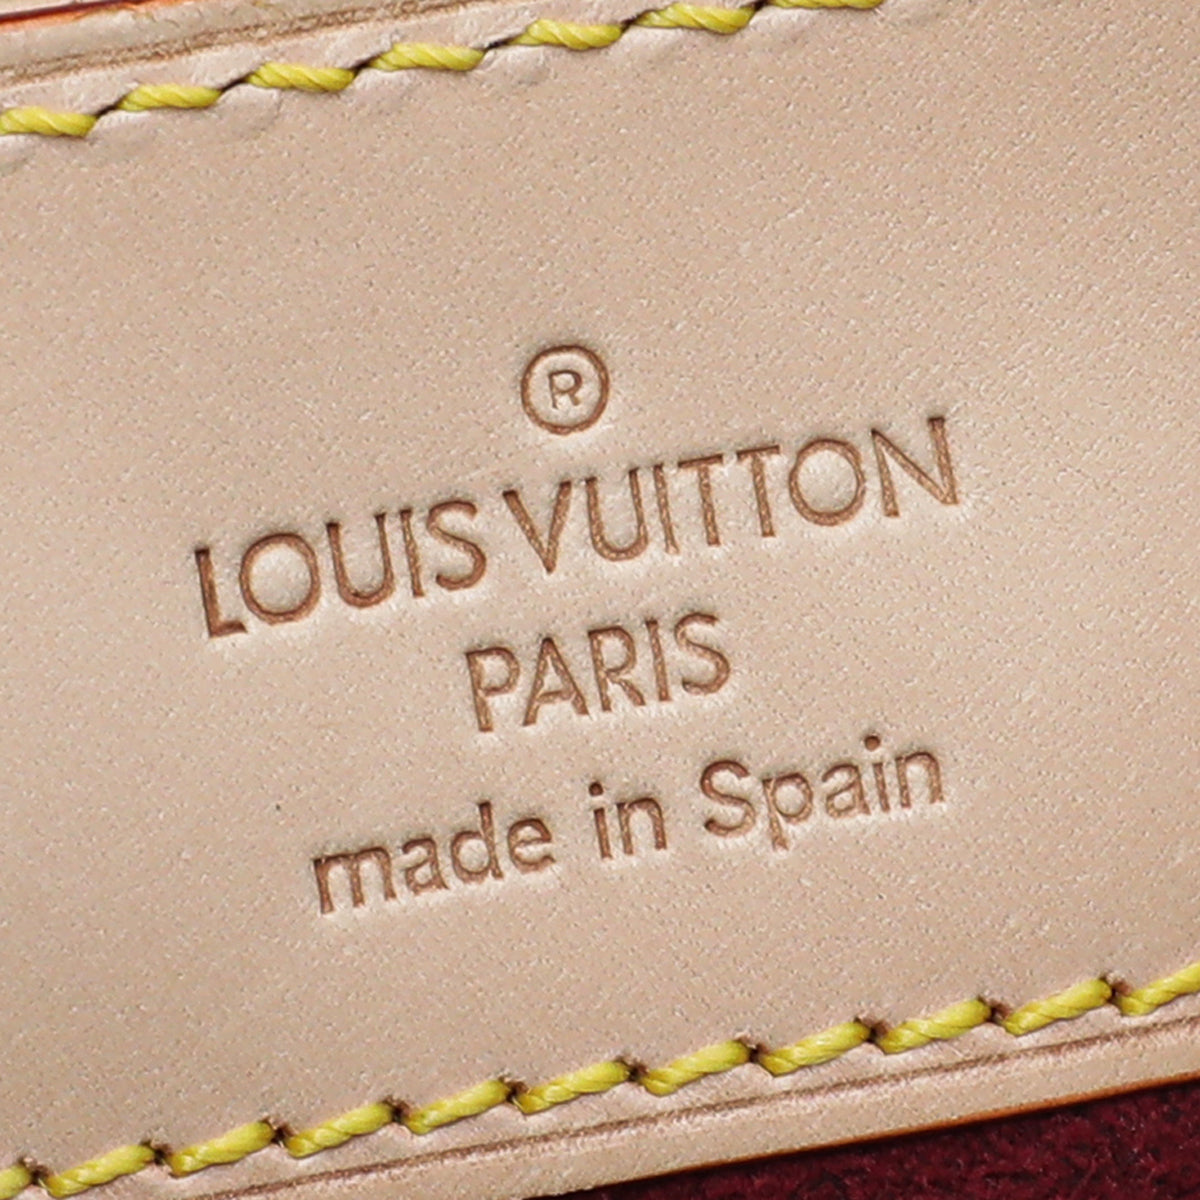 Louis Vuitton Dalmatian Sac Rabat Bag - Black Shoulder Bags